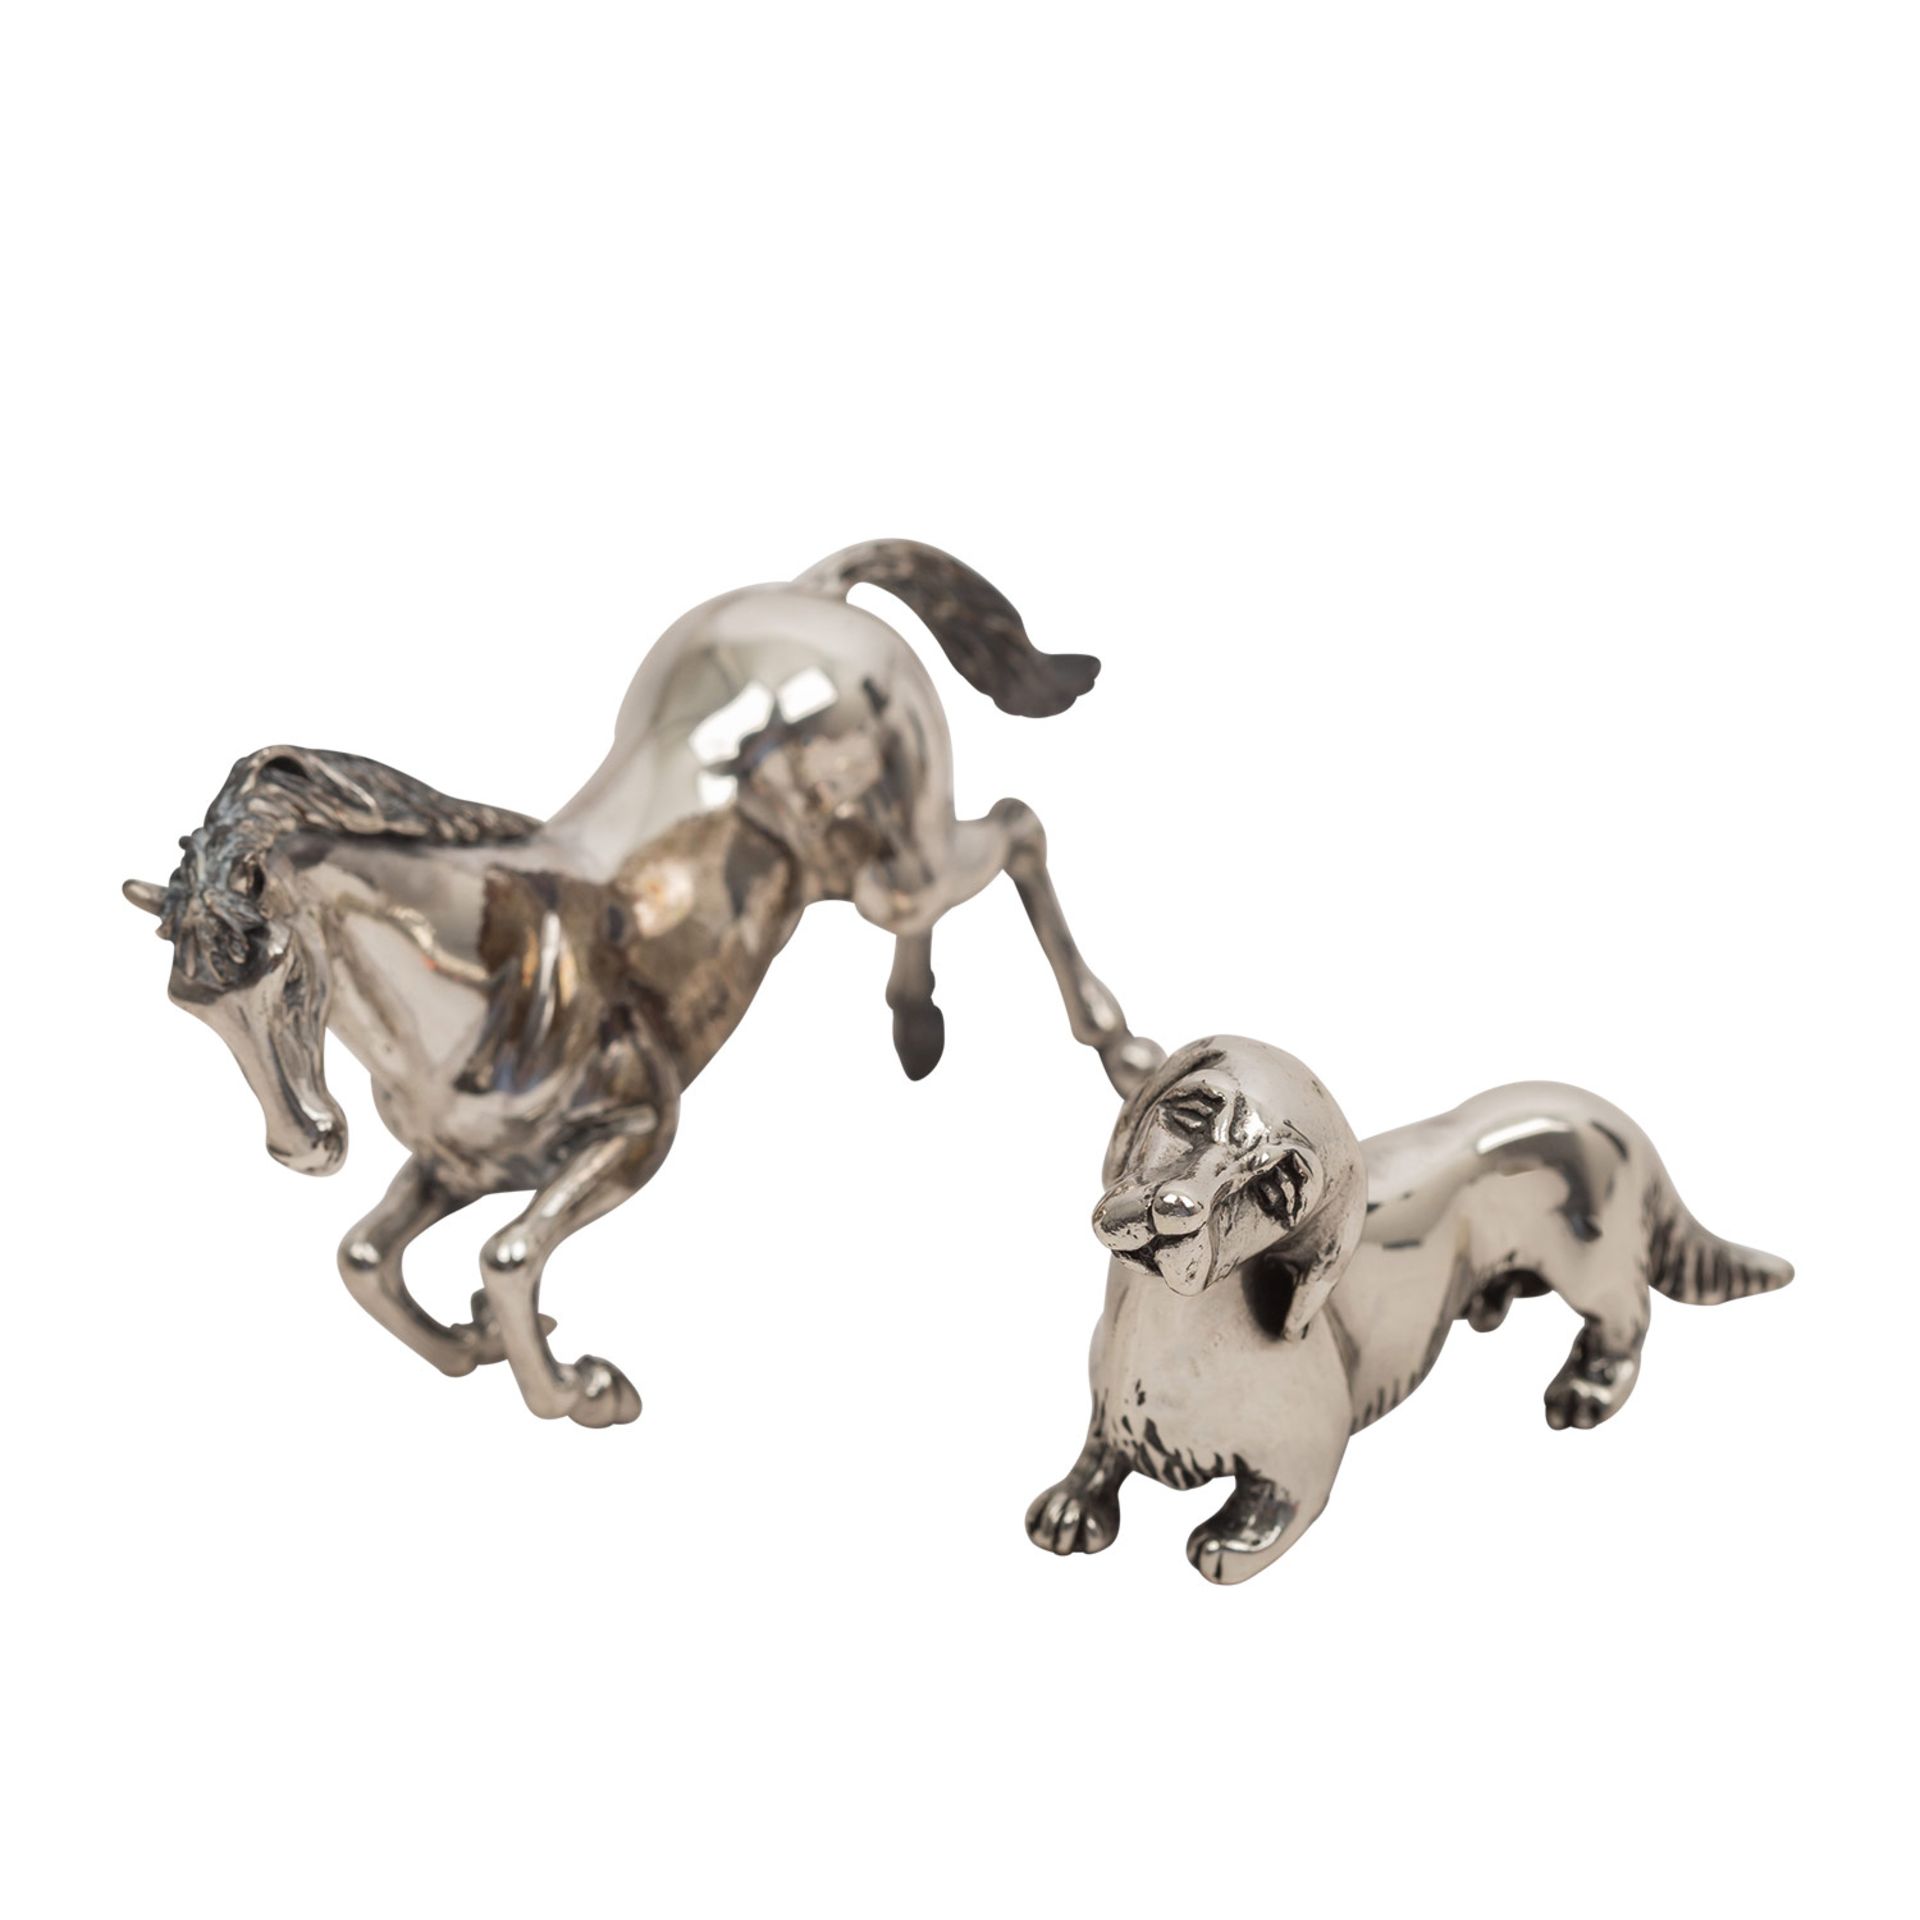 ZWEI MINIATUREN "Steigendes Pferd und Dackel"Silber, naturalistische Darstellung eines stehenden